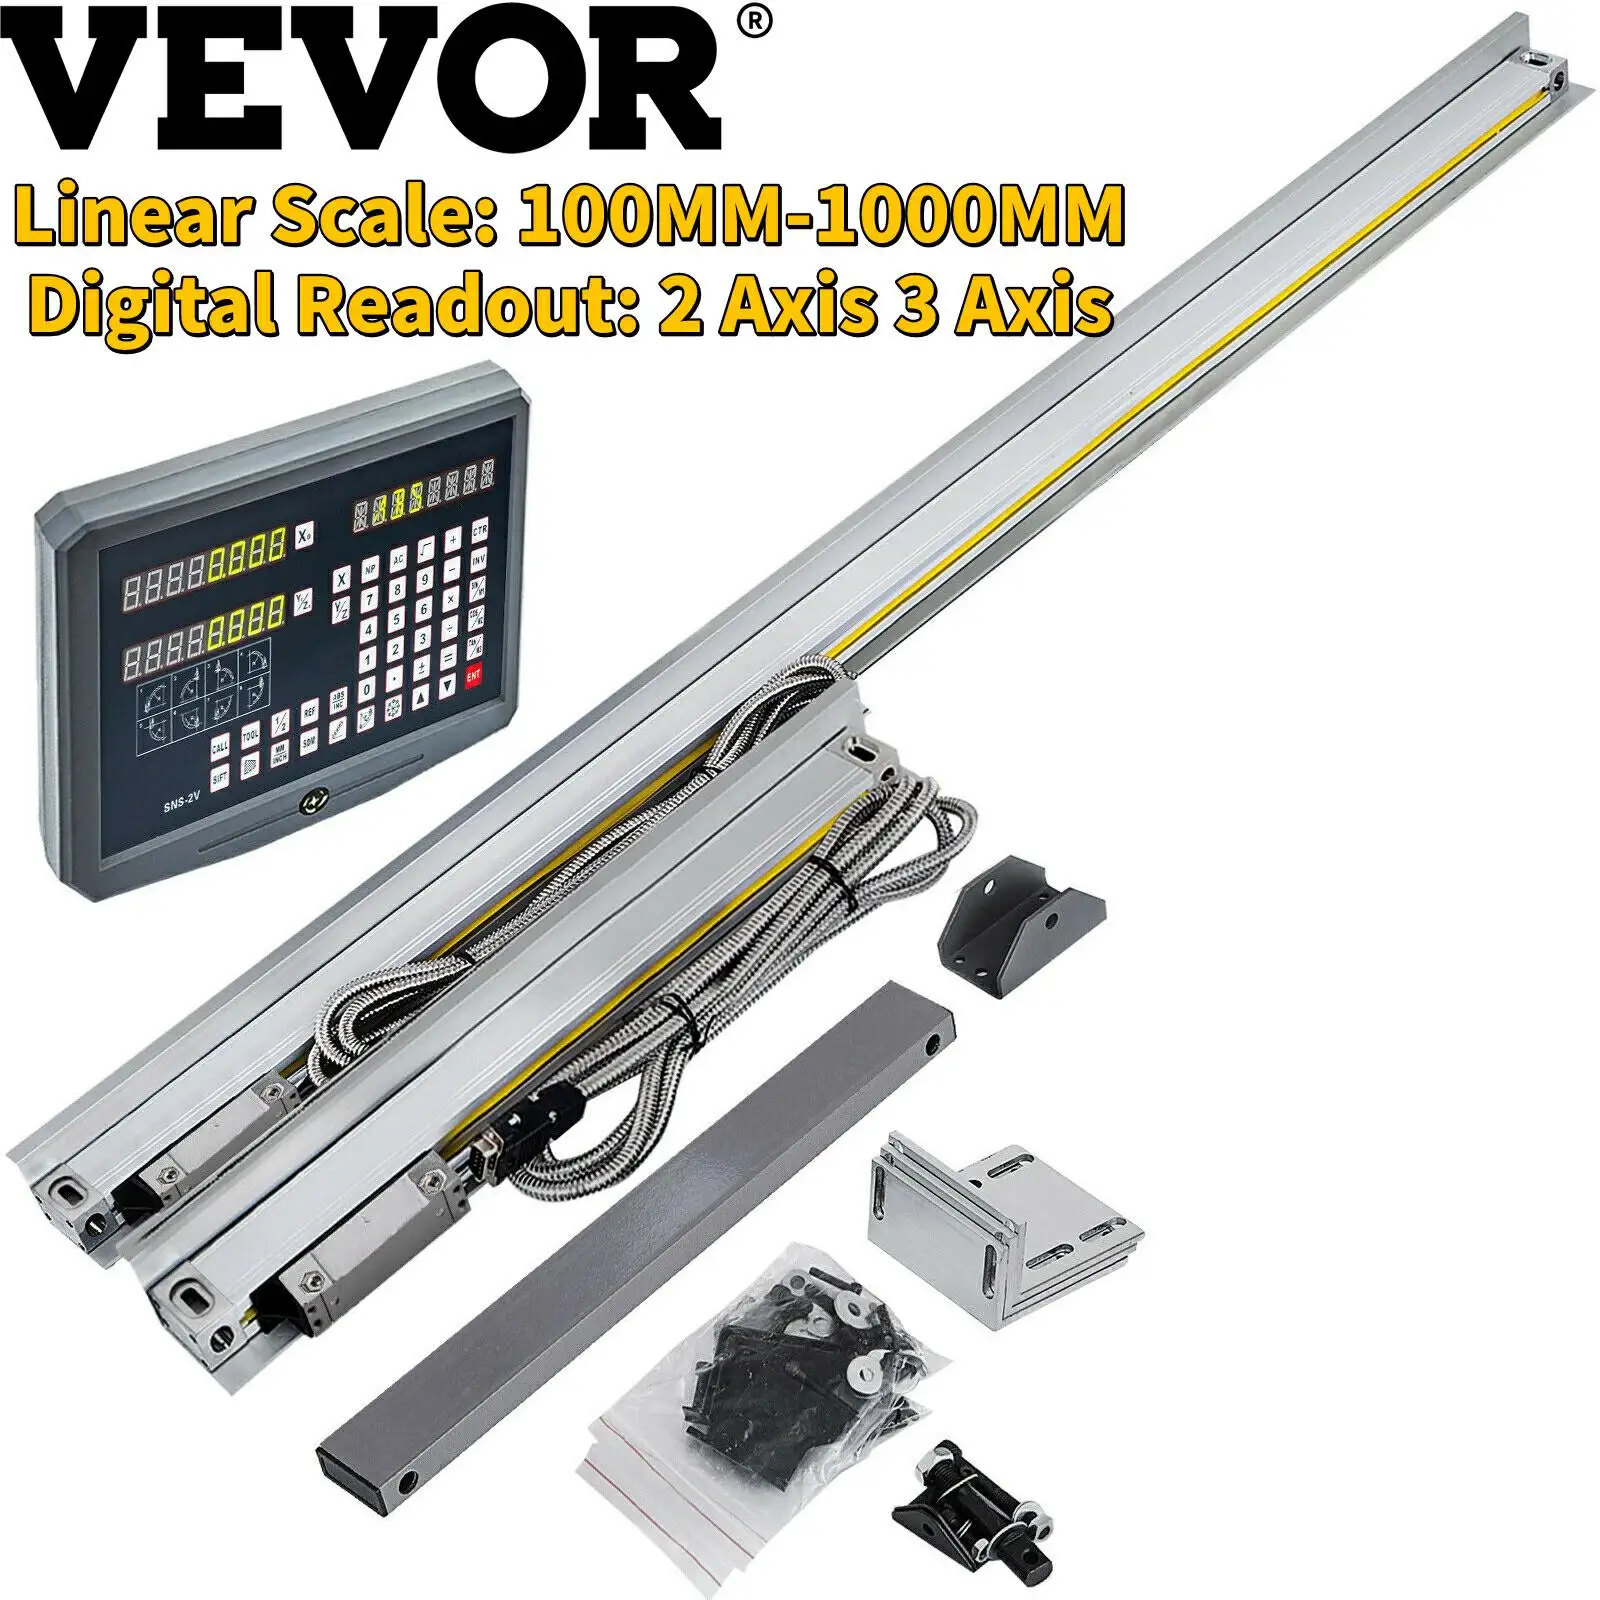 VEVOR Энкодер с линейной шкалой 50 мм-1000 мм, 2 оси, 3 оси, цифровой считыватель для фрезерования, сверления, шлифования, токарного станка, металлообработка